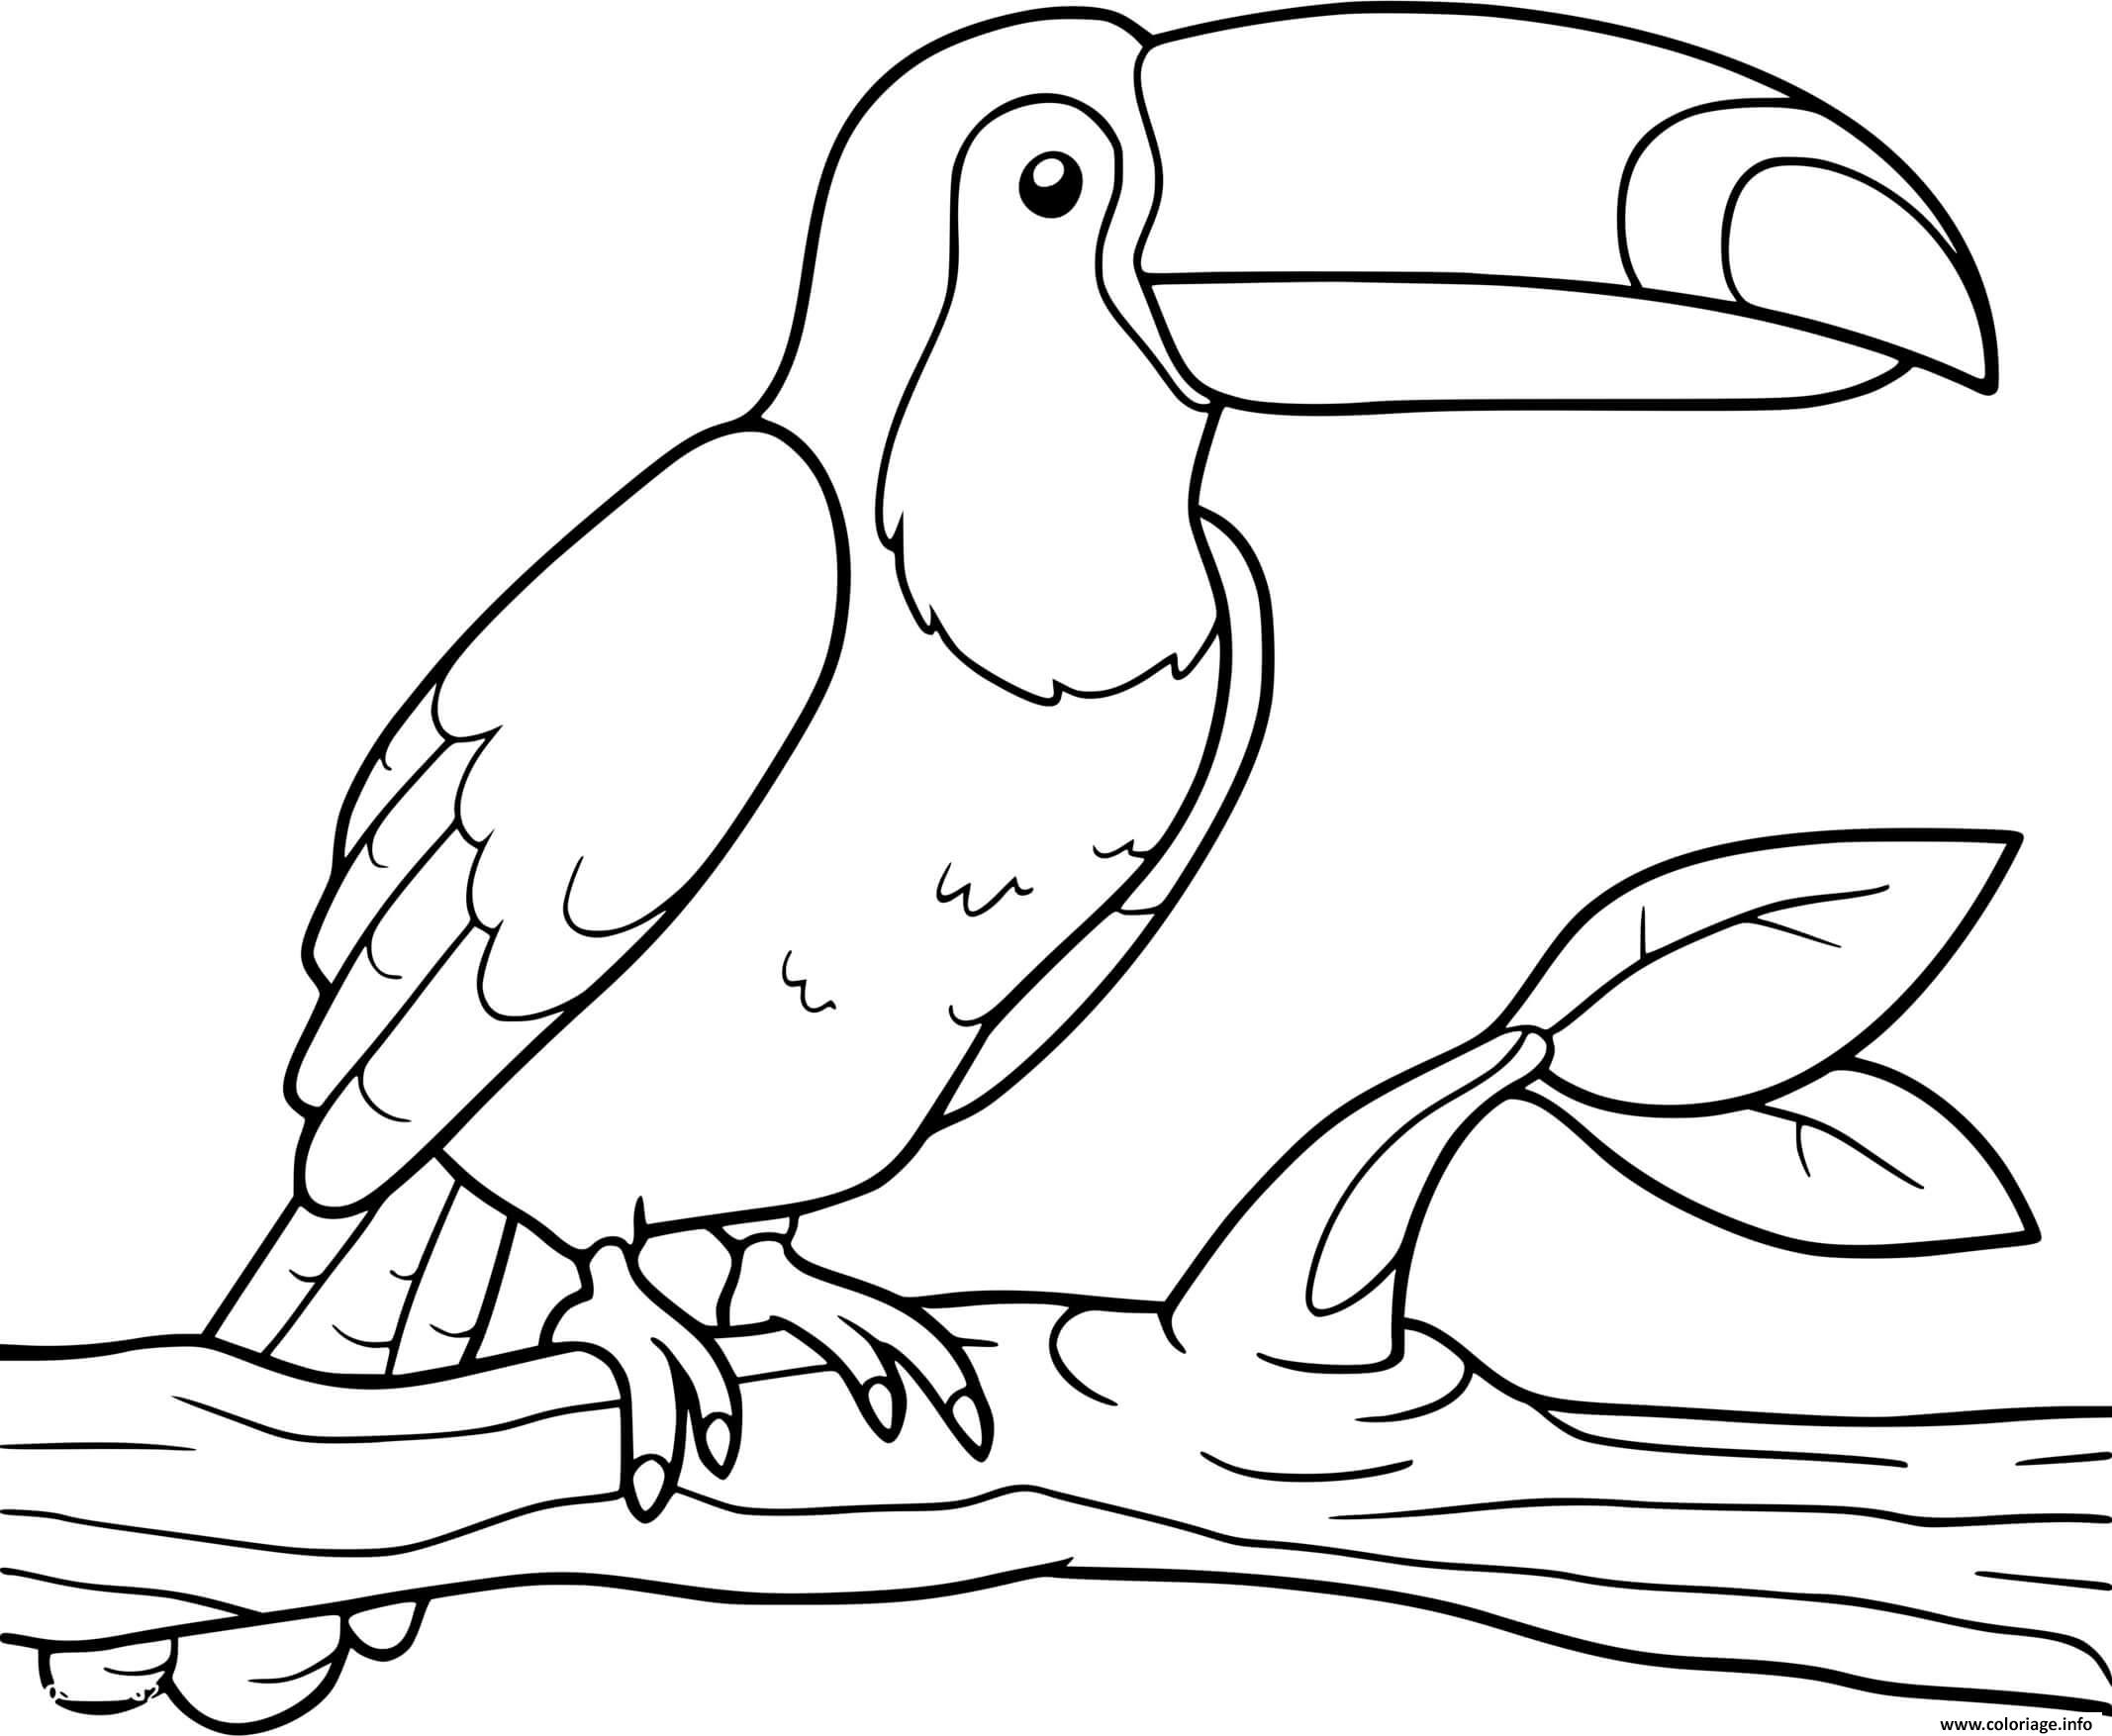 Coloriage toucan amerique du sud oiseau - JeColorie.com